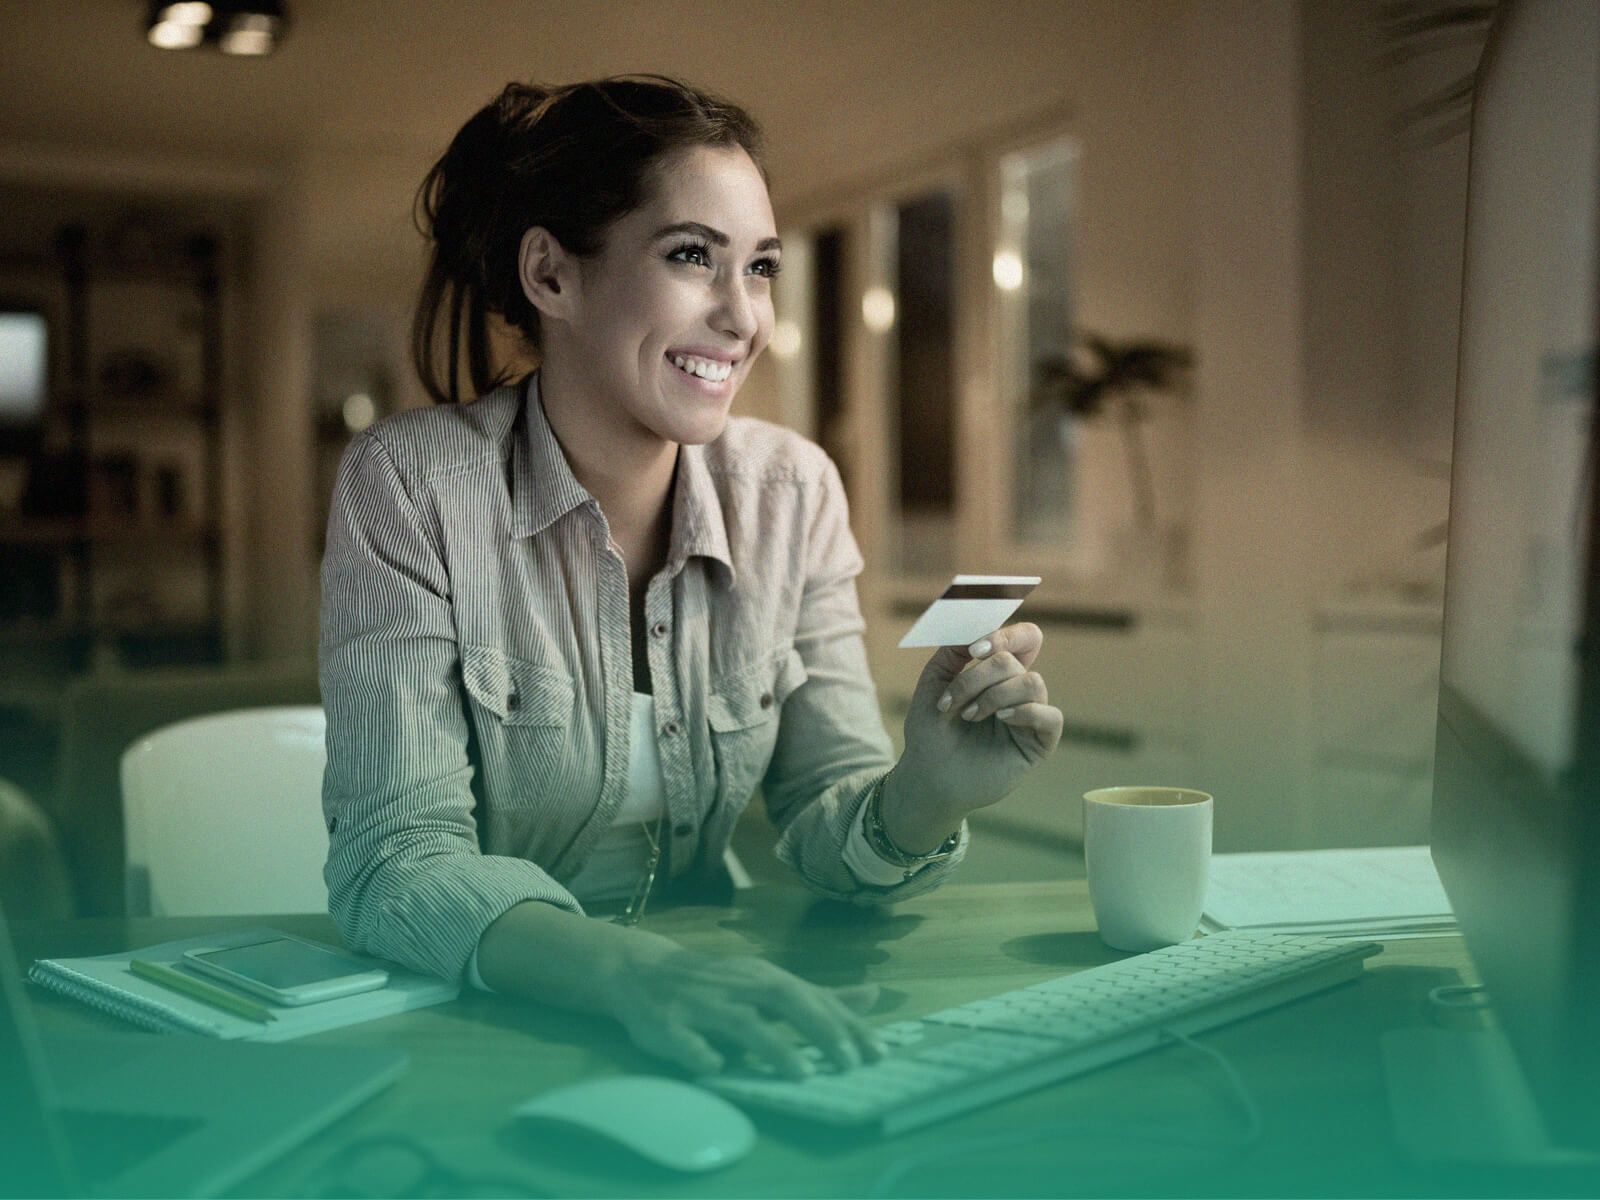 Mulher sentada à mesa e sorrindo enquanto olha para a tela de um computador, com uma das mãos sobre o teclado e a outra segurando um cartão de crédito.